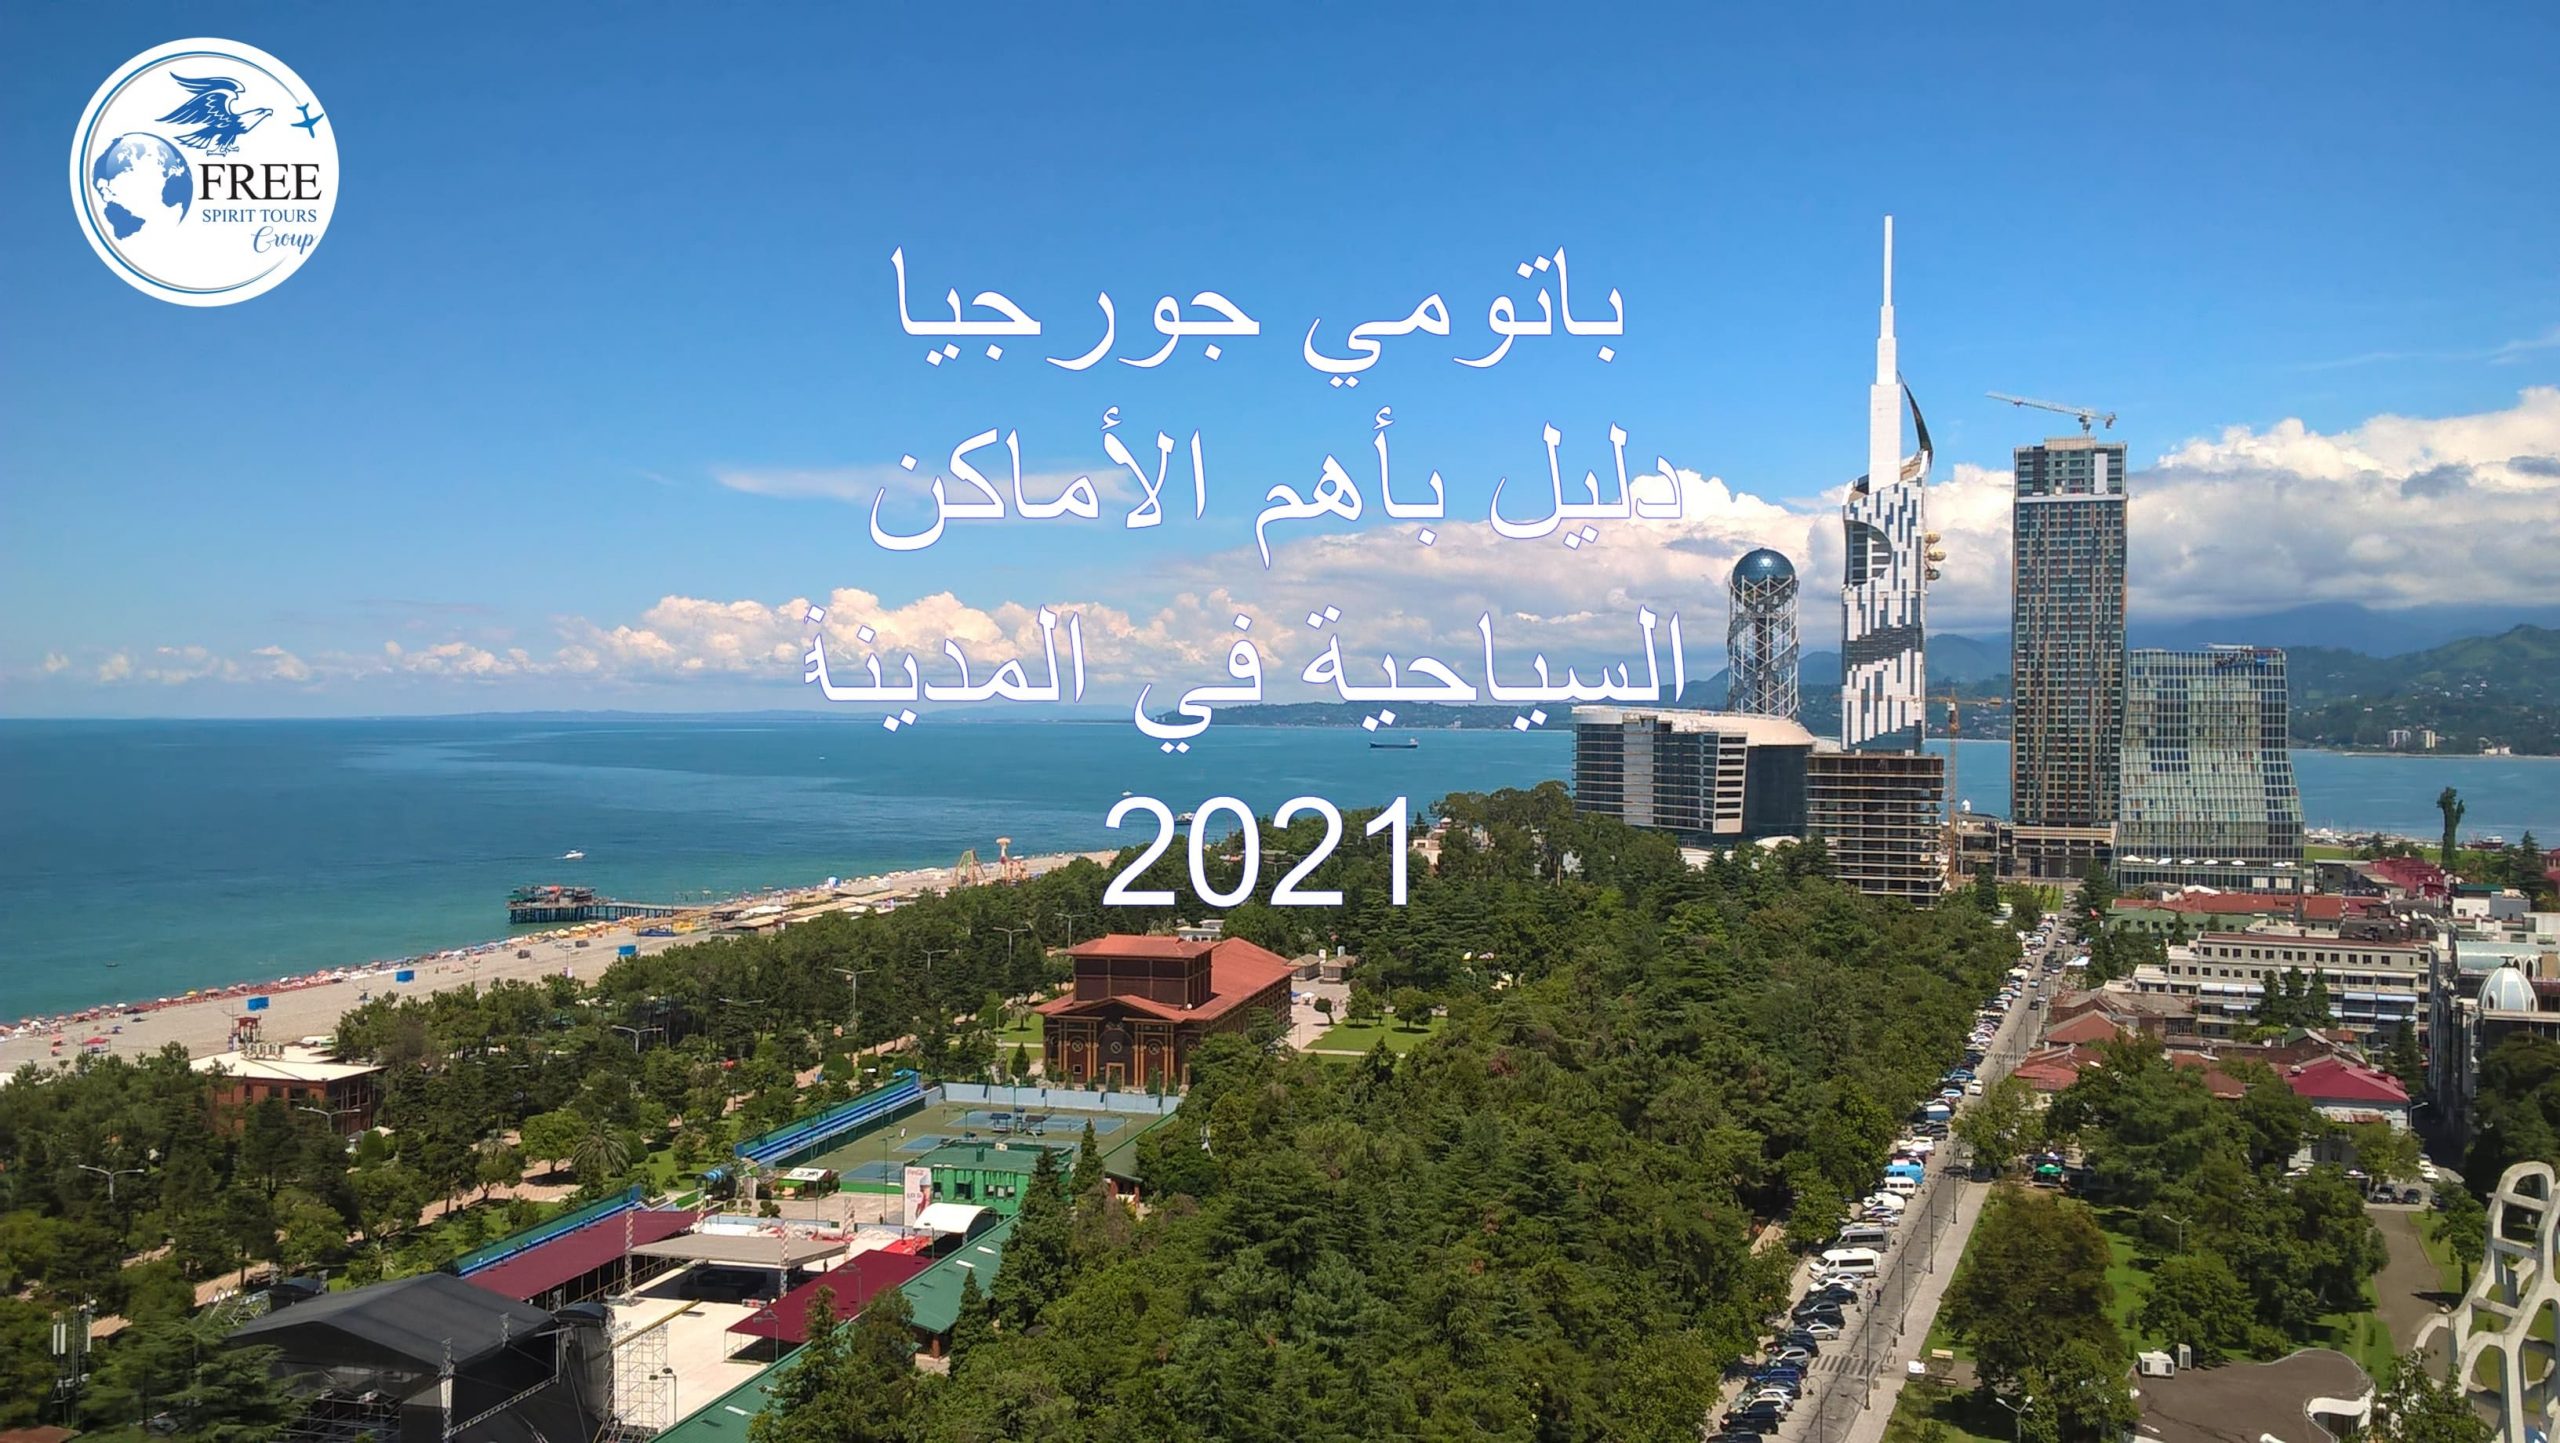  باتومي جورجيا دليل بأهم الأماكن السياحية في المدينة 2021